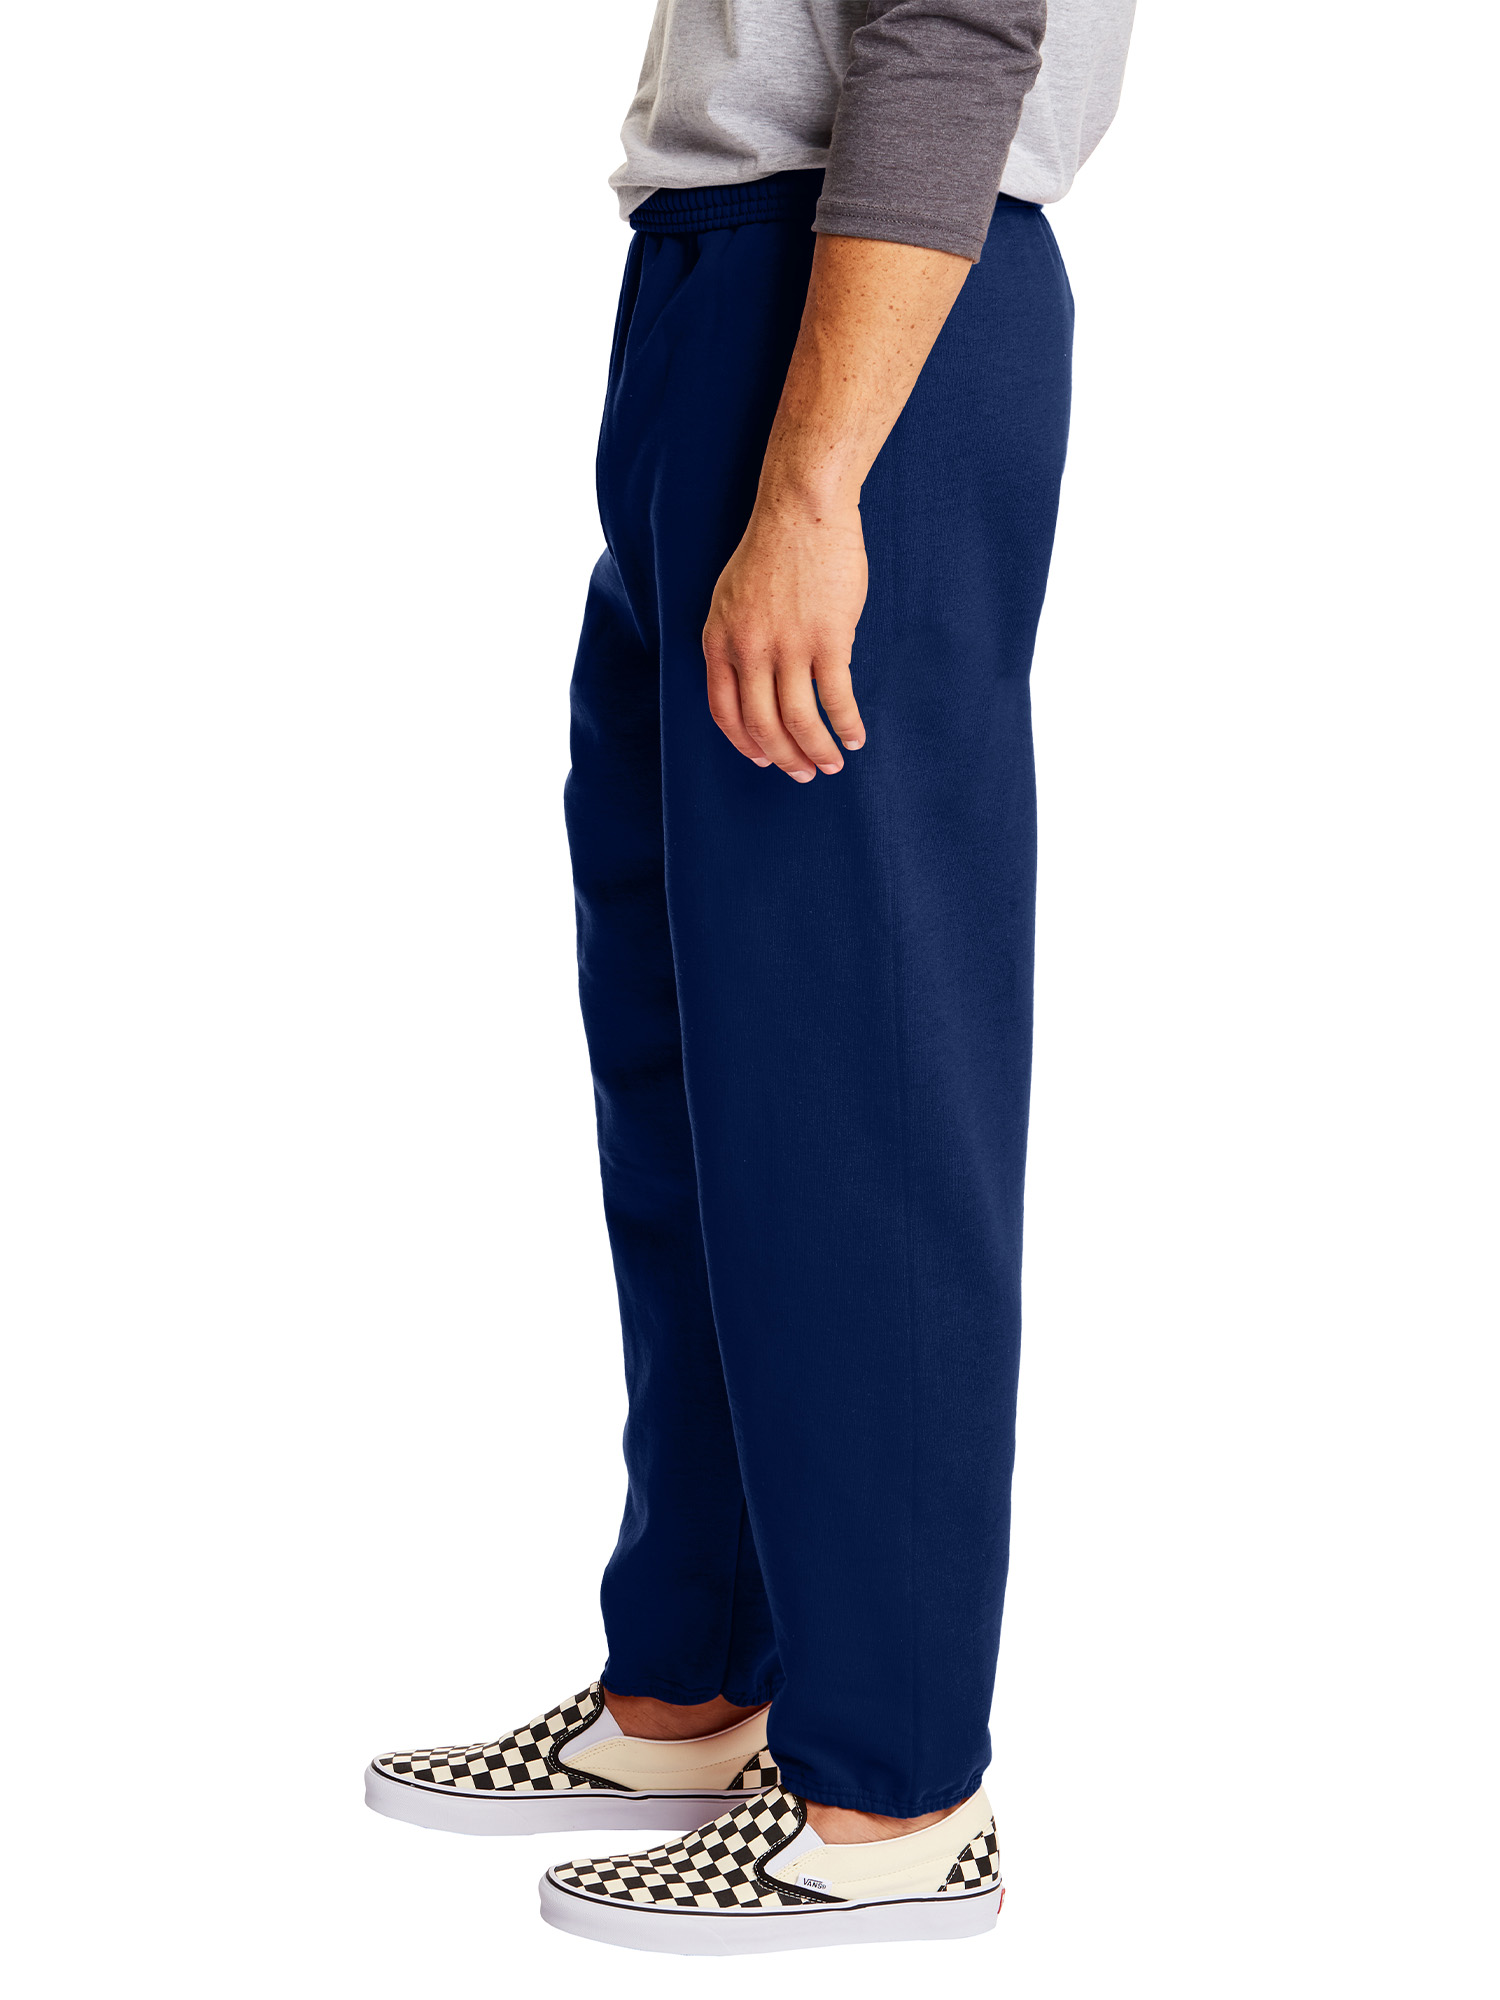 Hanes Men's and Big Men's EcoSmart Fleece Sweatpants, Sizes S-3XL - image 3 of 7